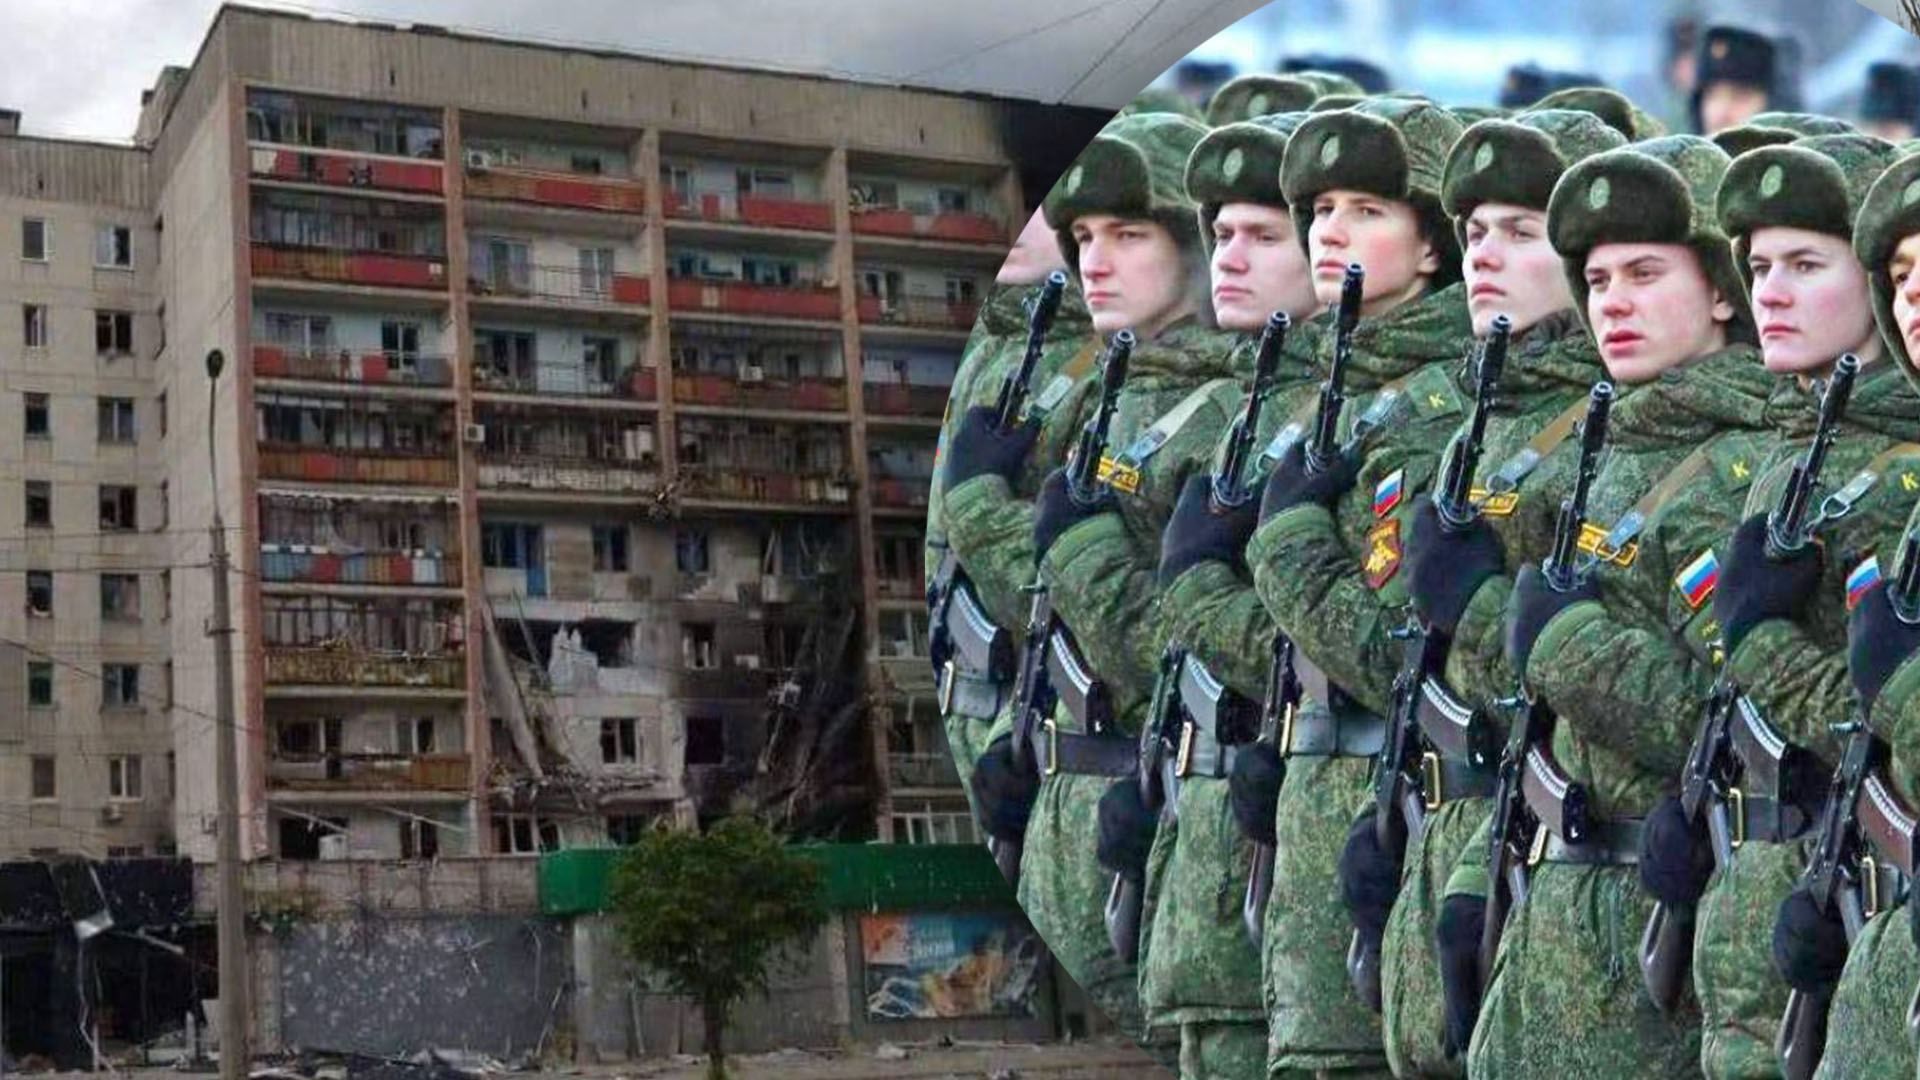 Северодонецк полуокружен, но ВСУ об отступлении не думают: командир батальона "Свобода"